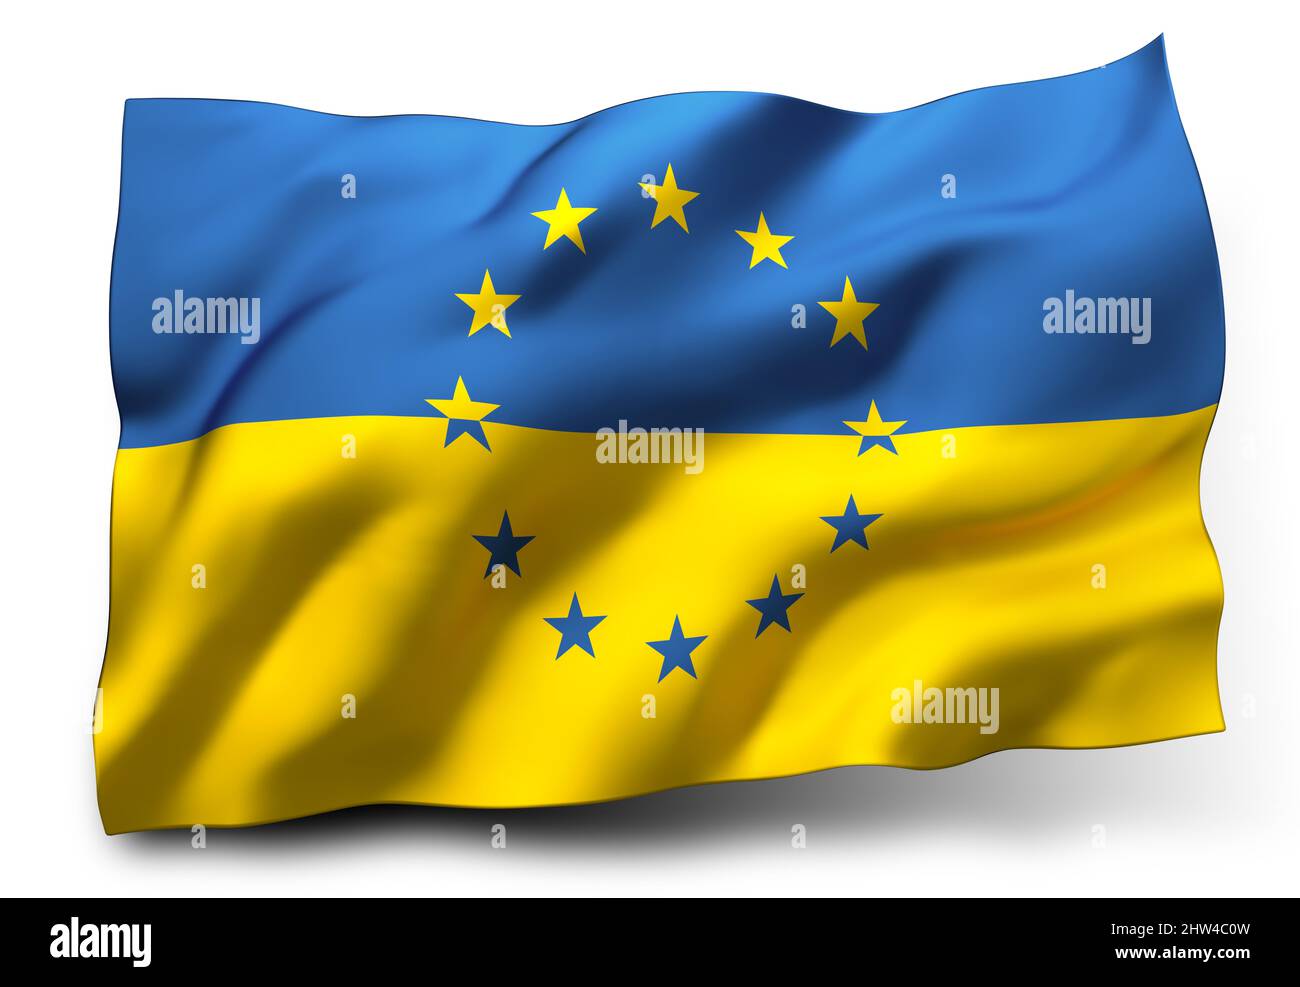 Bandiera dell'Ucraina sventola, con le stelle della bandiera dell'Unione europea, isolata su sfondo bianco Foto Stock